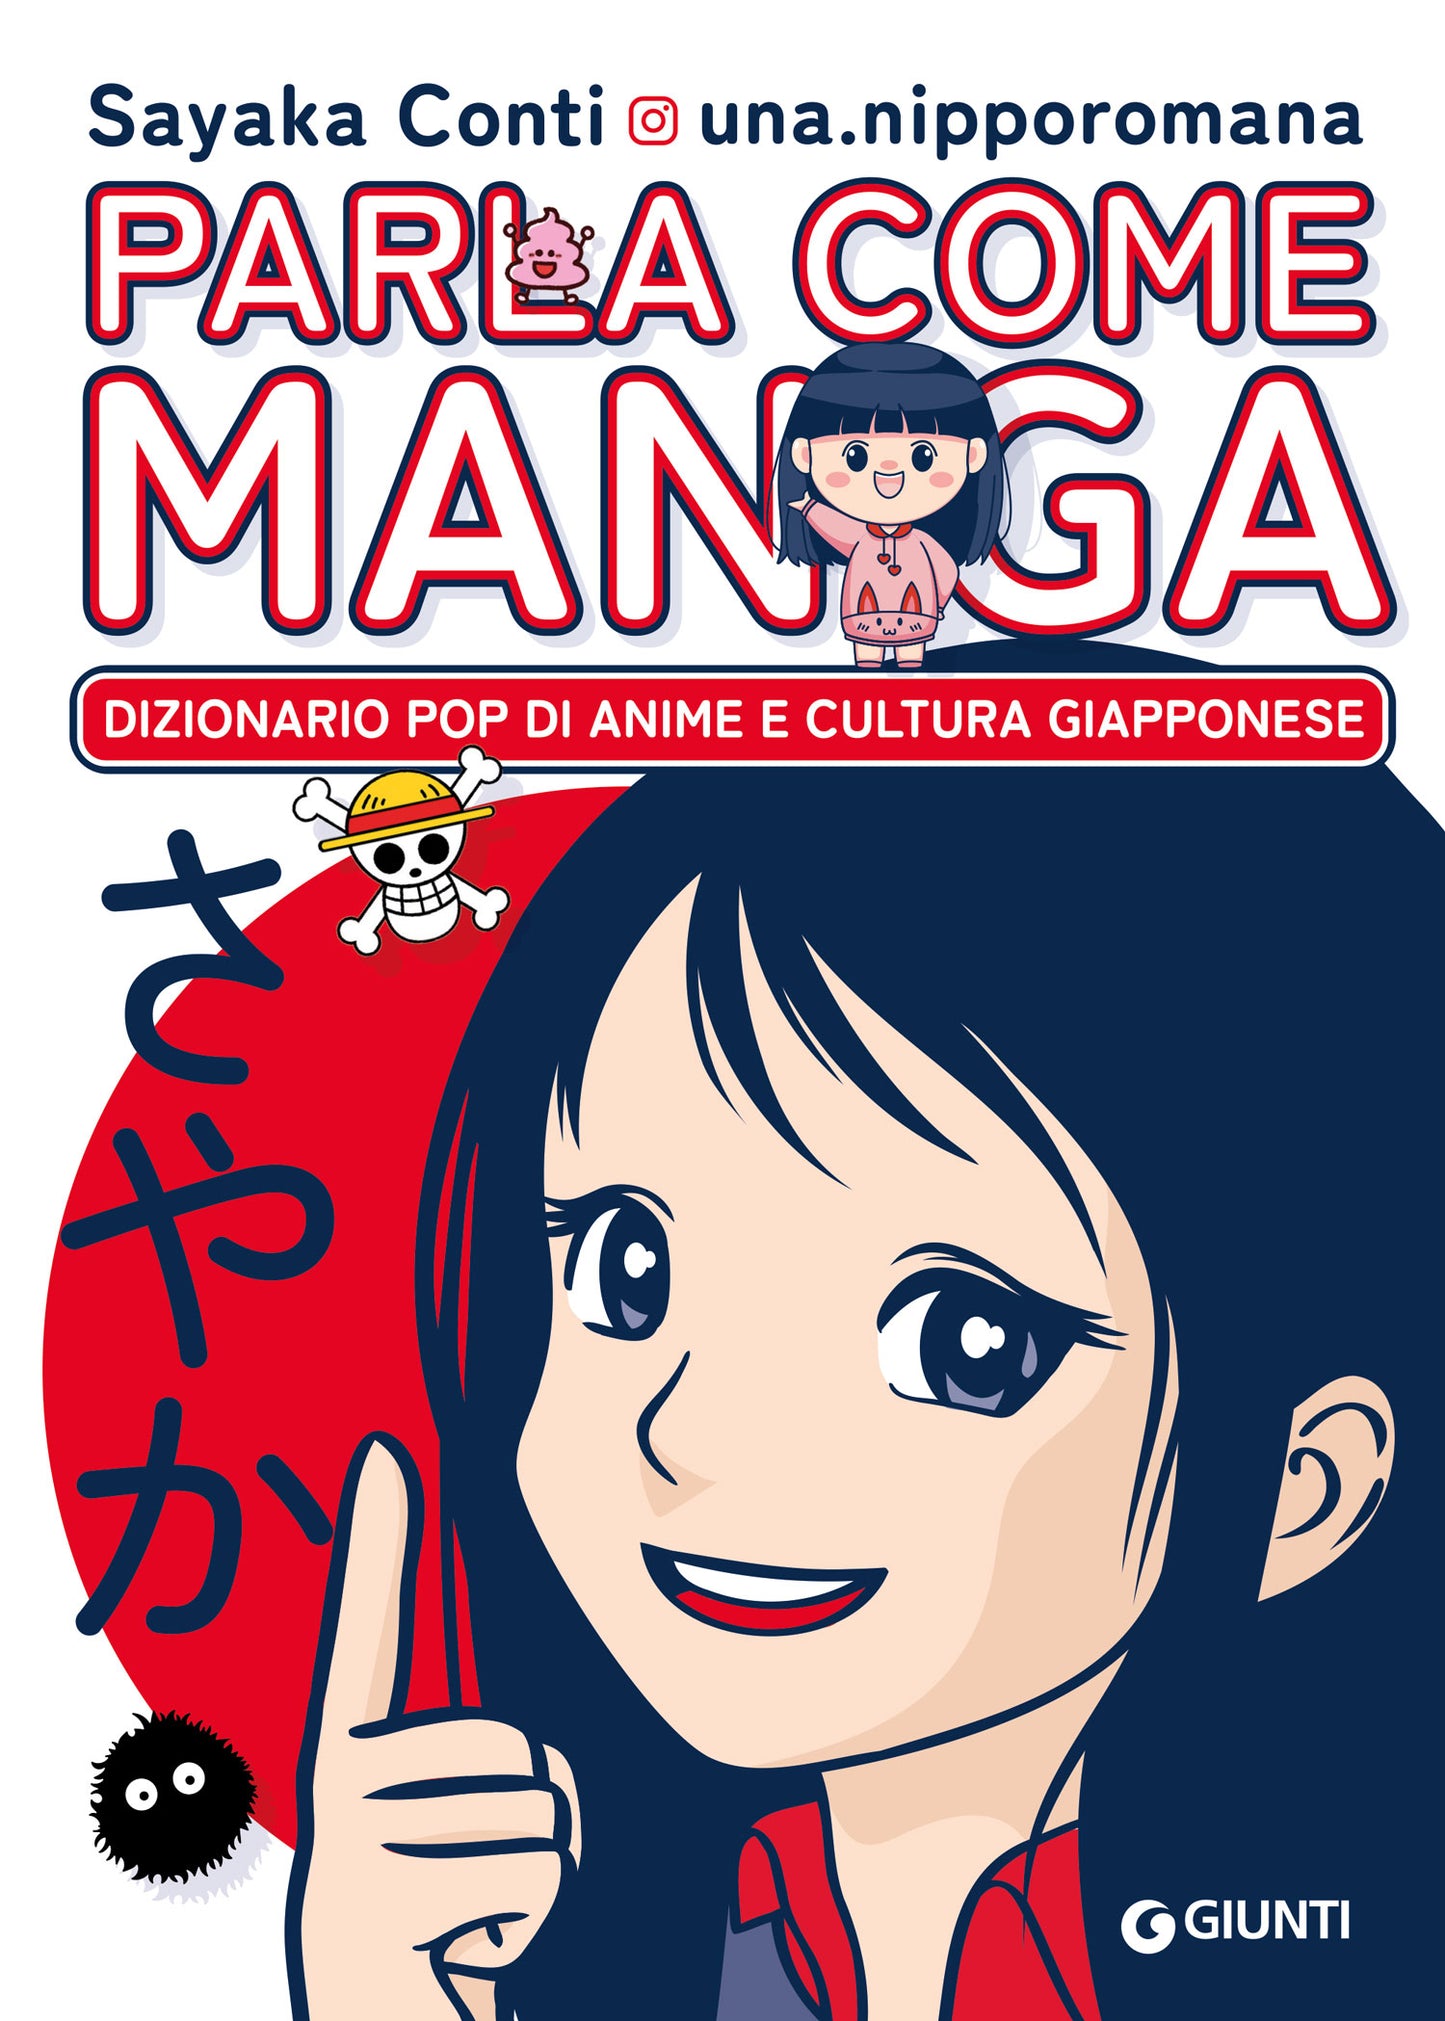 Parla come manga . Dizionario pop di anime e cultura giapponese @una.nipporomana